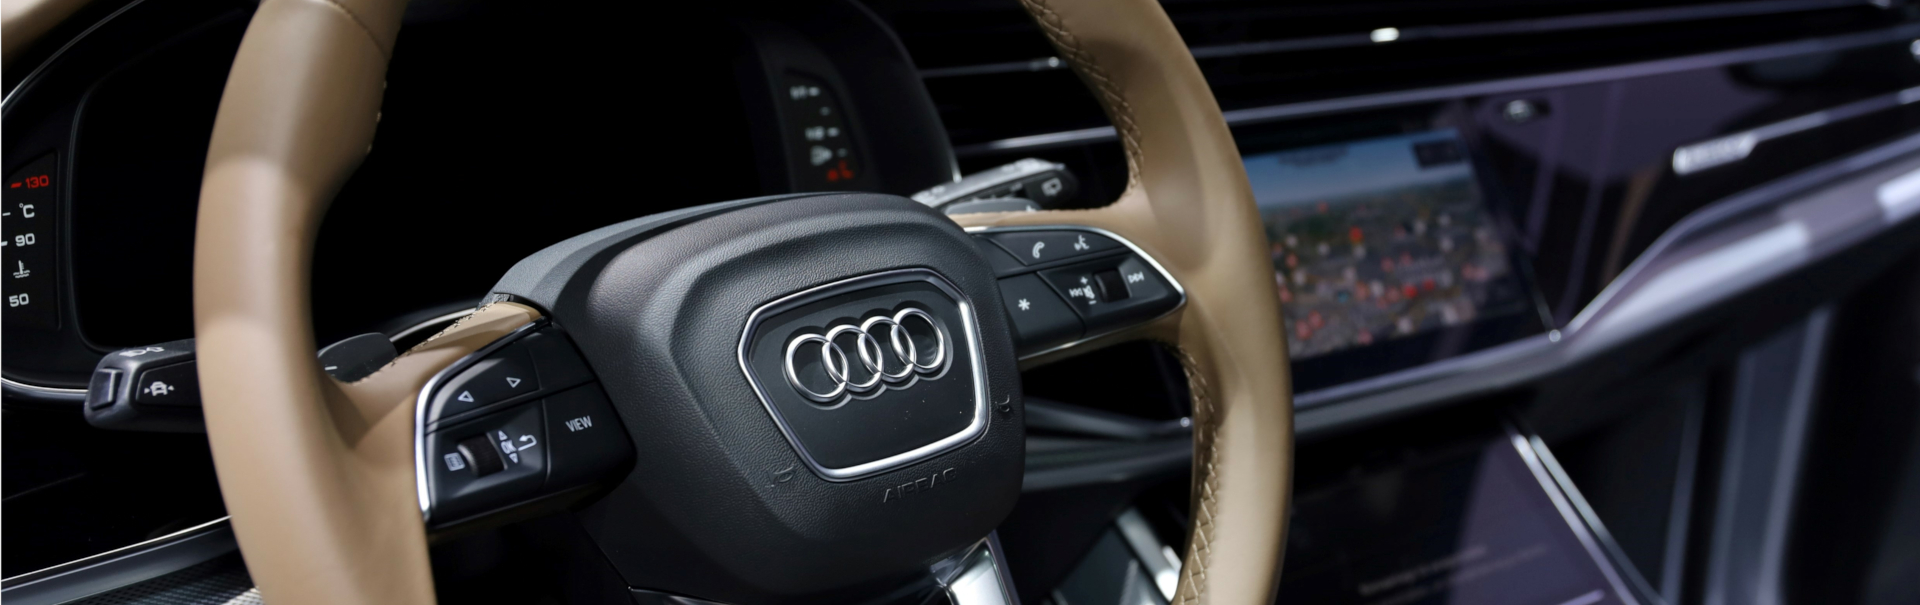 Abgasskandal: Audi und VW haften zusammen